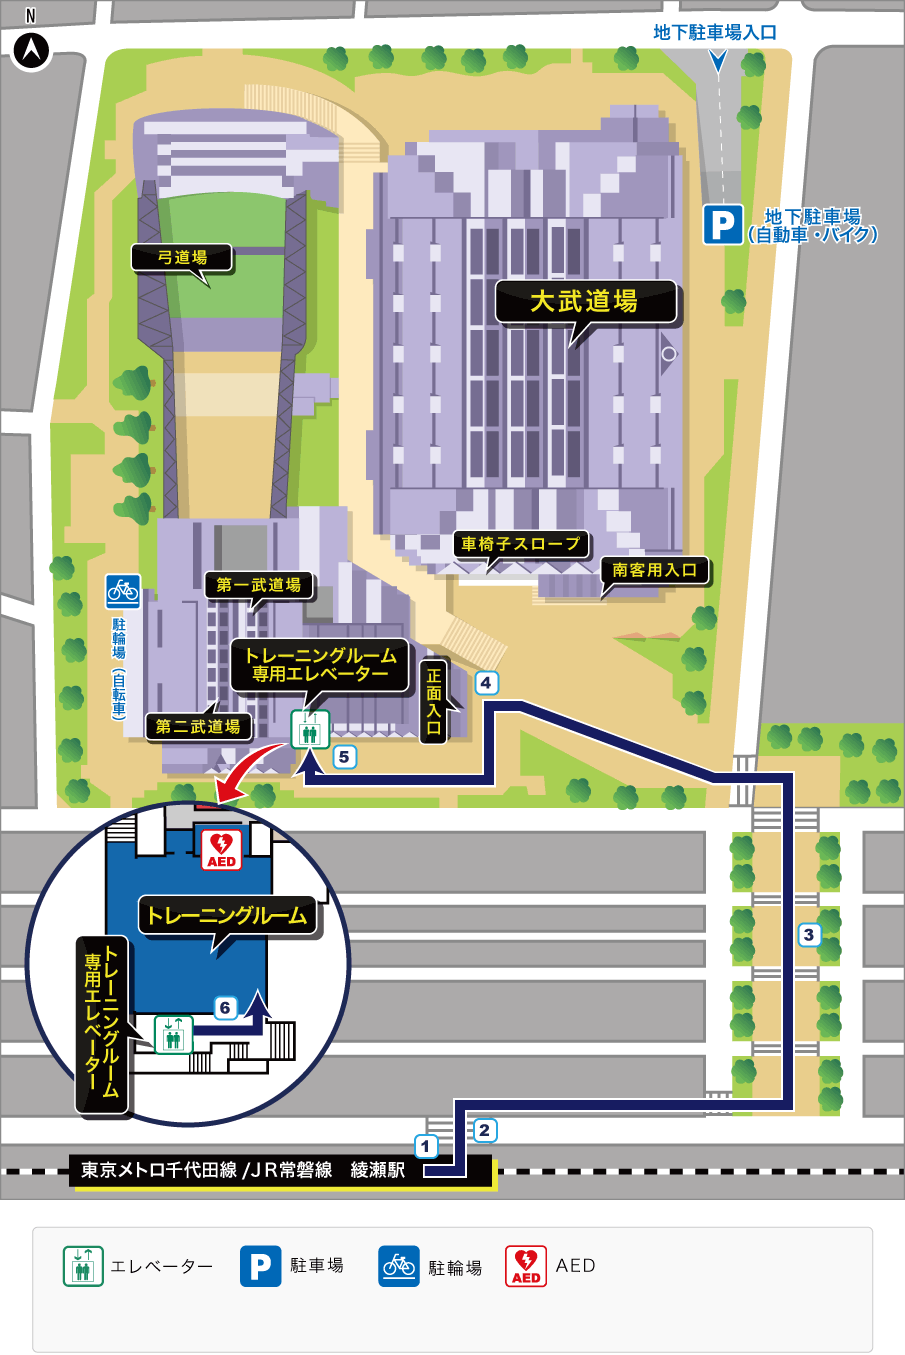 綾瀬駅から「トレーニングルーム」へのルート案内見取り図